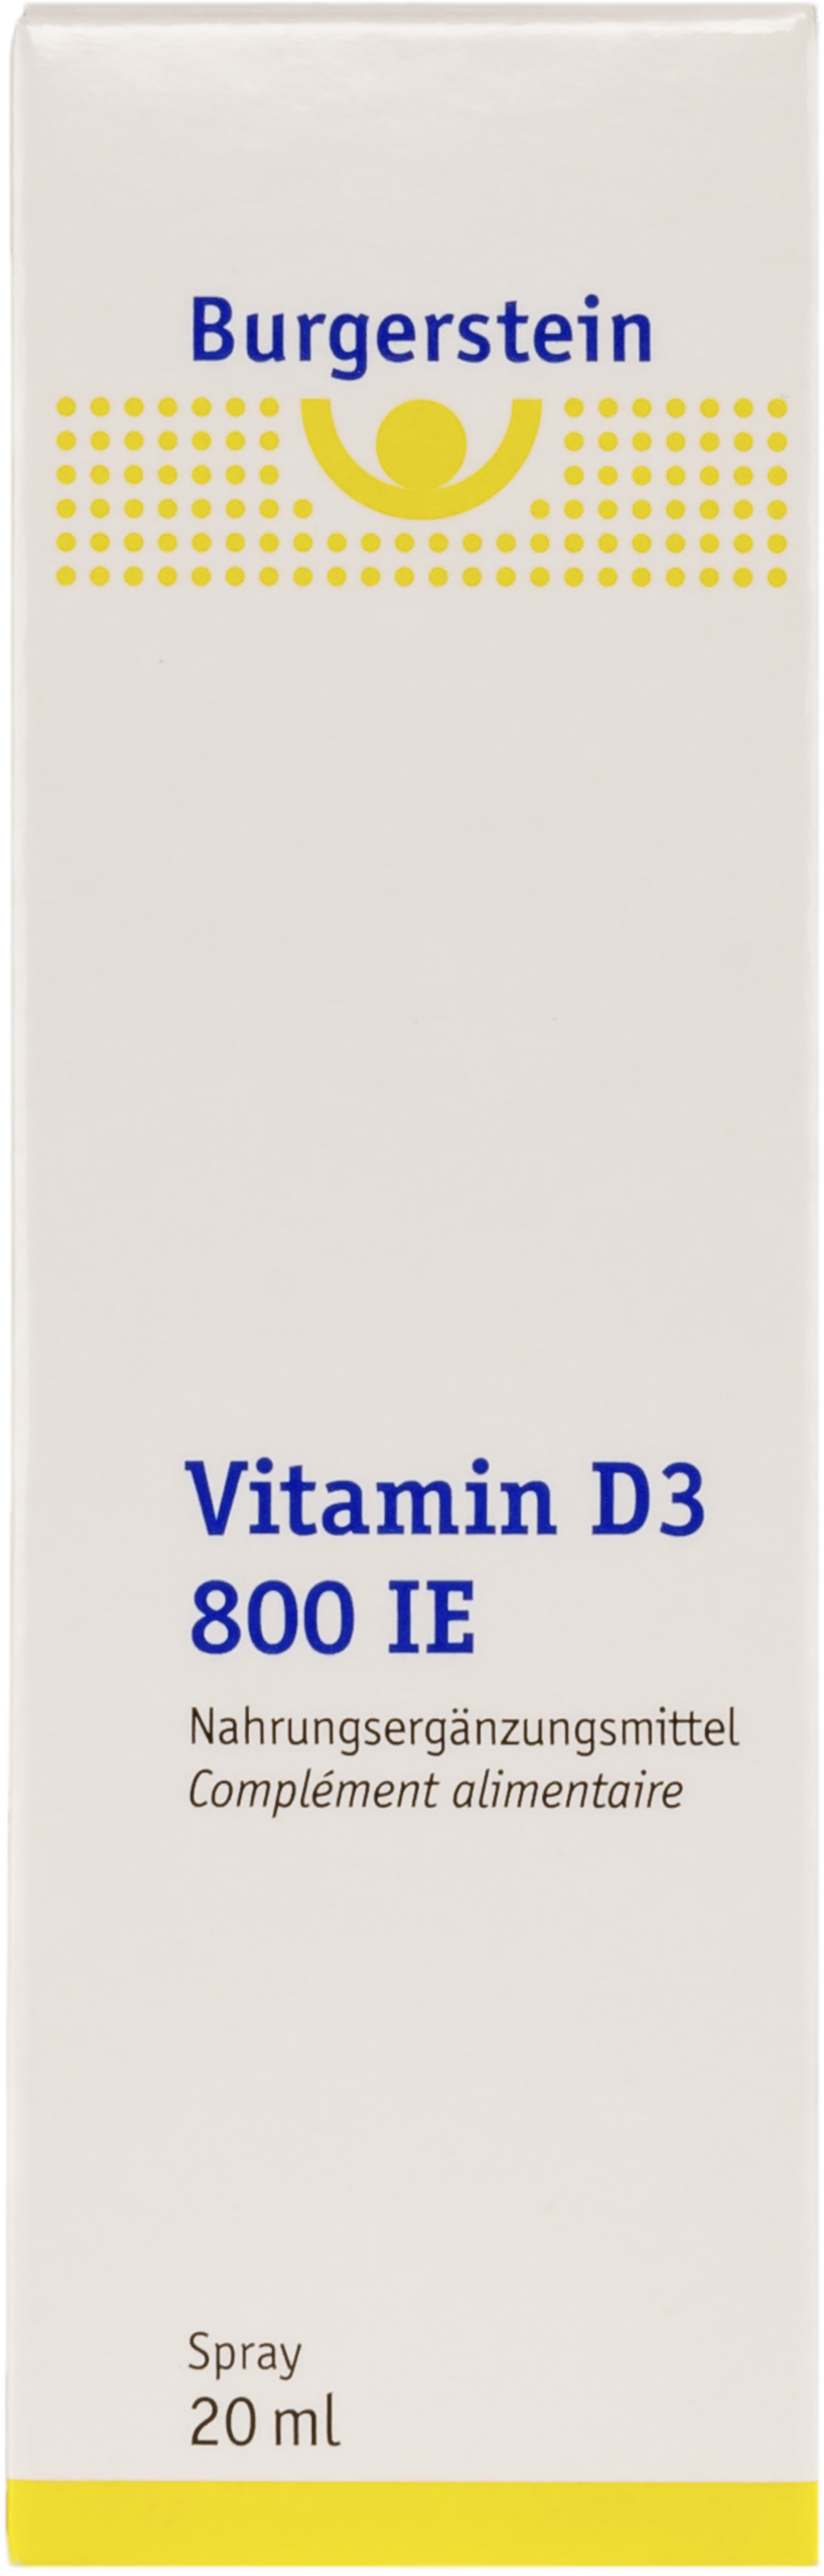 Burgerstein Vitamin D3 Spray 800 IE - 20 ml